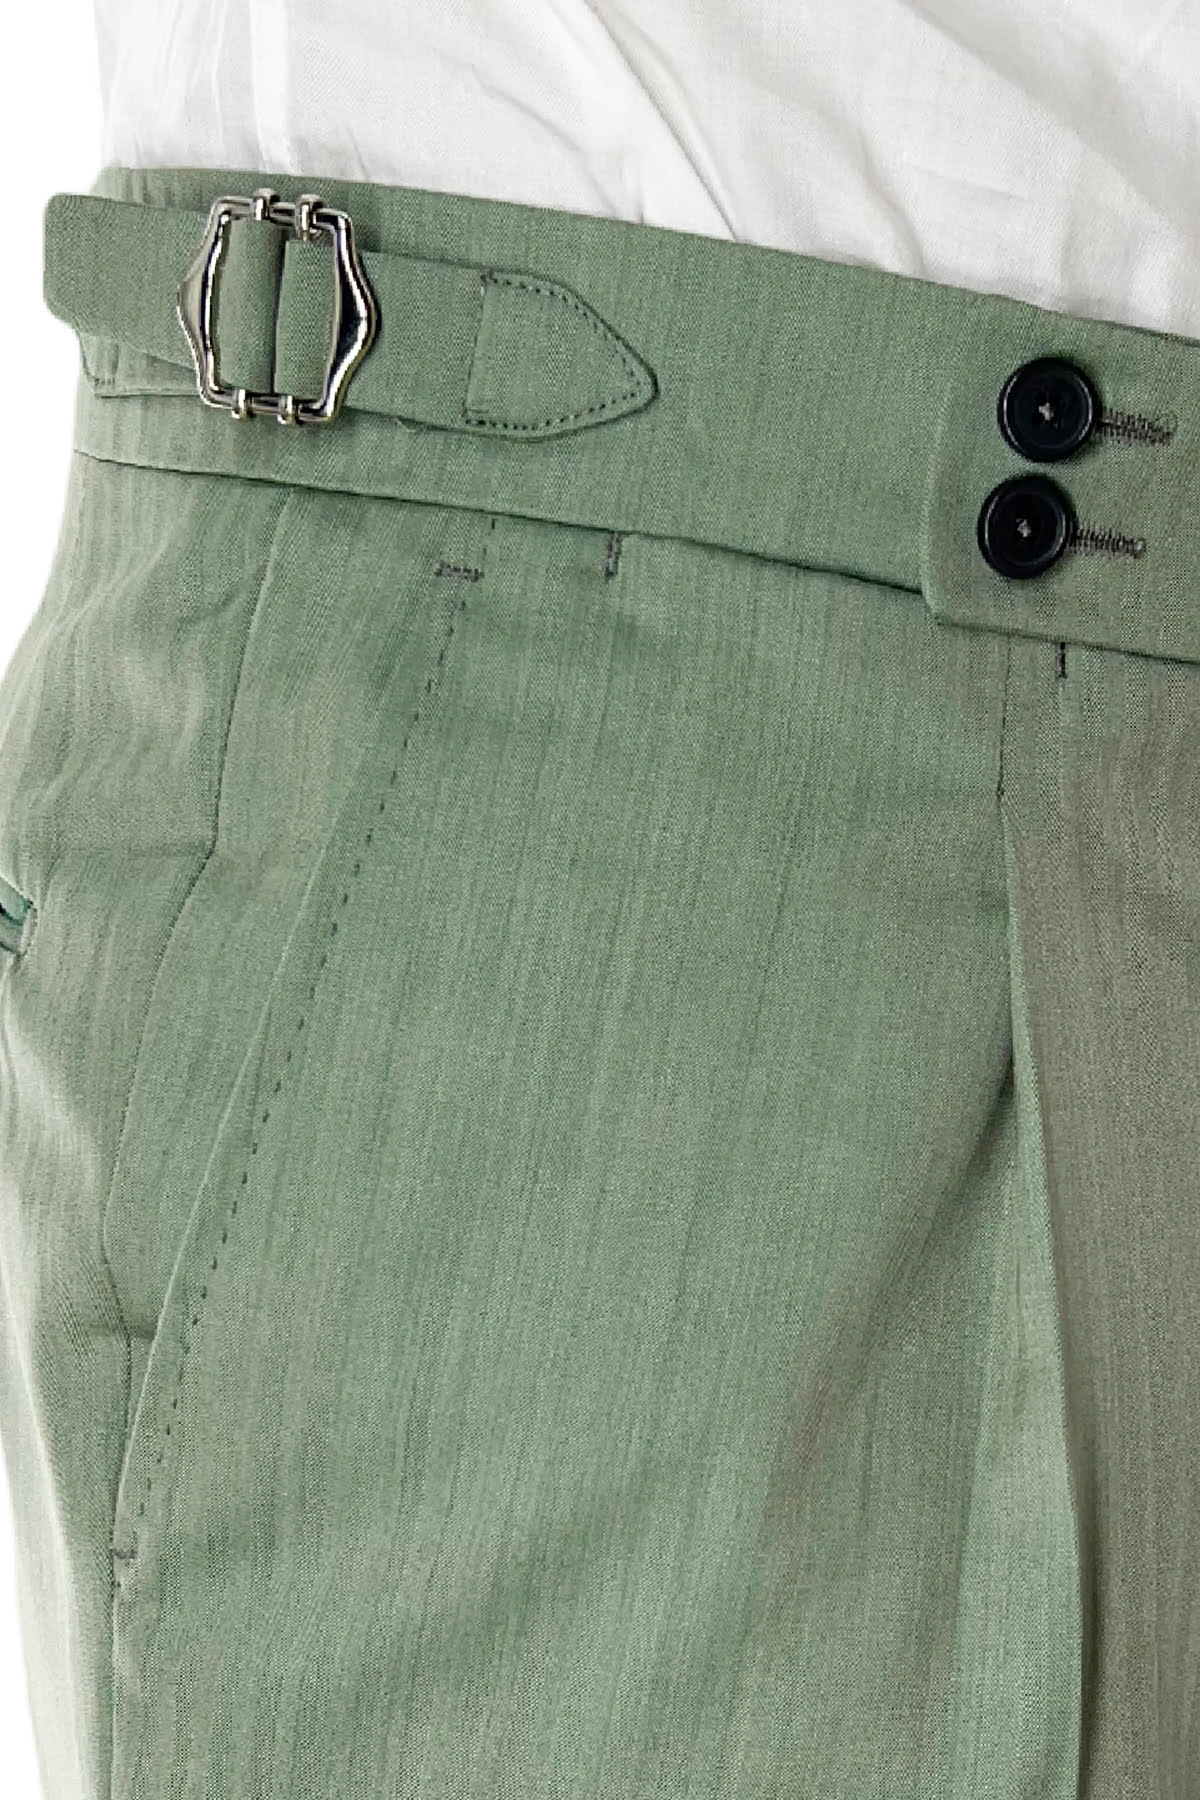 Pantalone uomo verde Solaro in fresco lana e seta Holland & Sherry vita alta con pinces fibbie laterali e risvolto 4cm